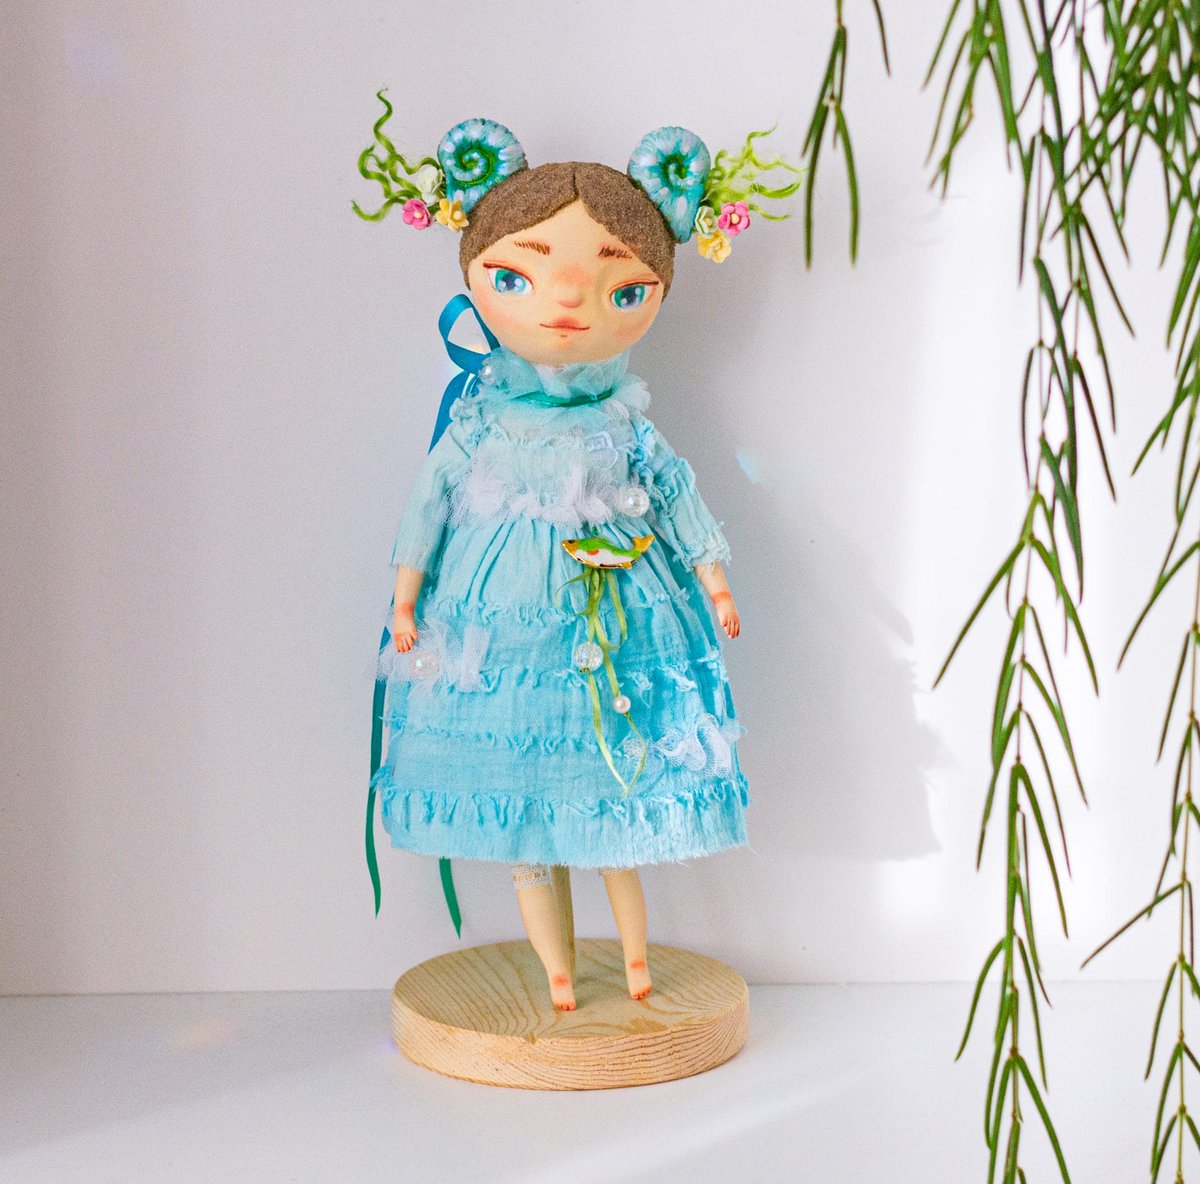 Collectible handmade art doll Shell – a girl from the sea
dailydoll.shop/shop/collectib…
#dailydollshop #dailydoll #texstildoll #art #ooak #handmadedoll #christmasgift #homedecor #toys #artdoll #eastergift #boudoirdoll #valentinesgift #tilda #dolls #birthdaygift #handmade #homedecor